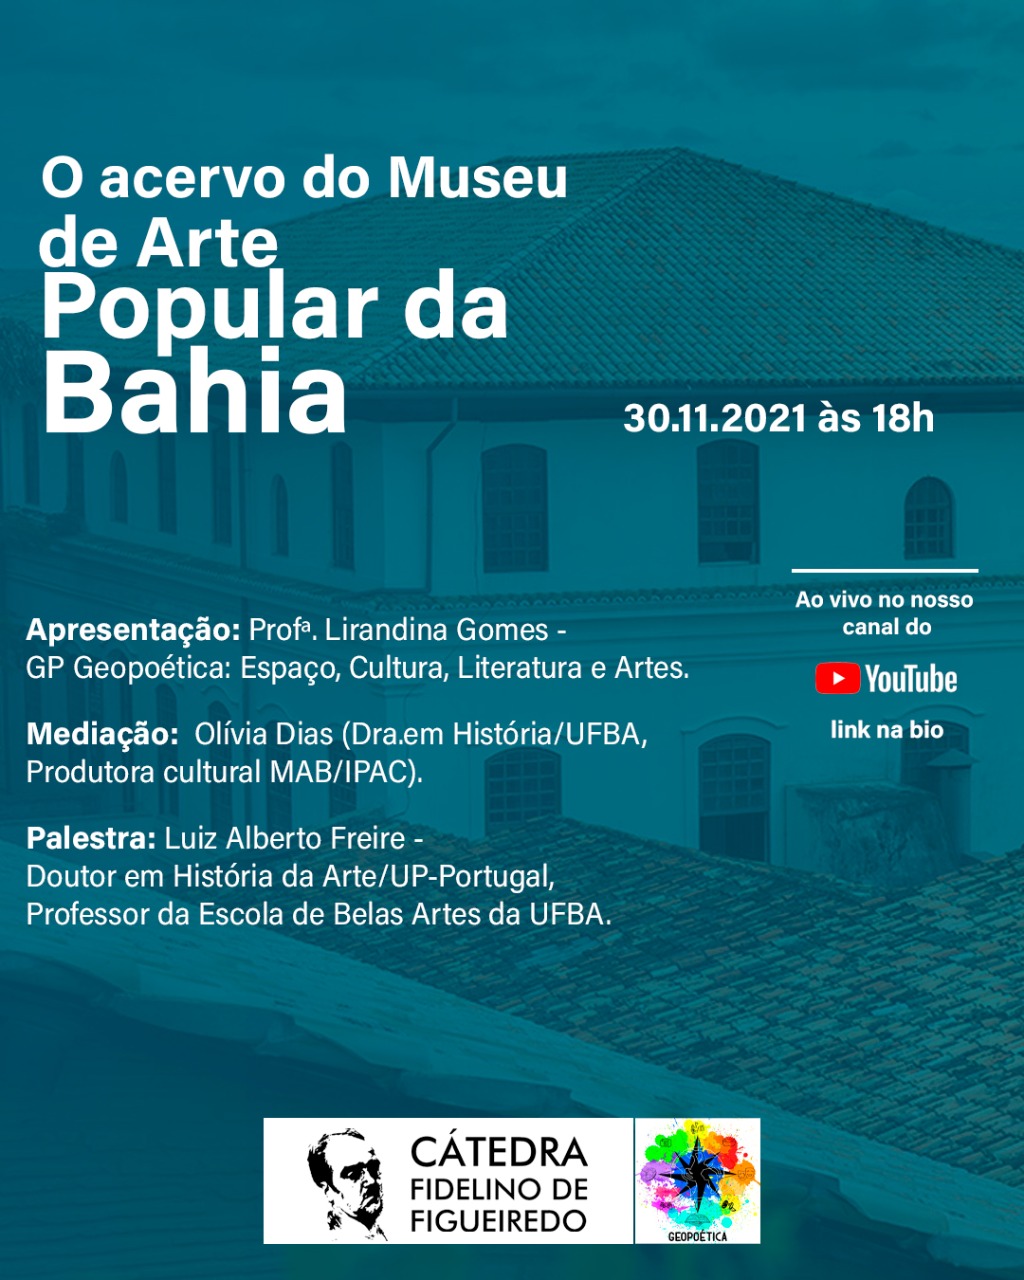 O acervo do Museu de Arte Popular da Bahia